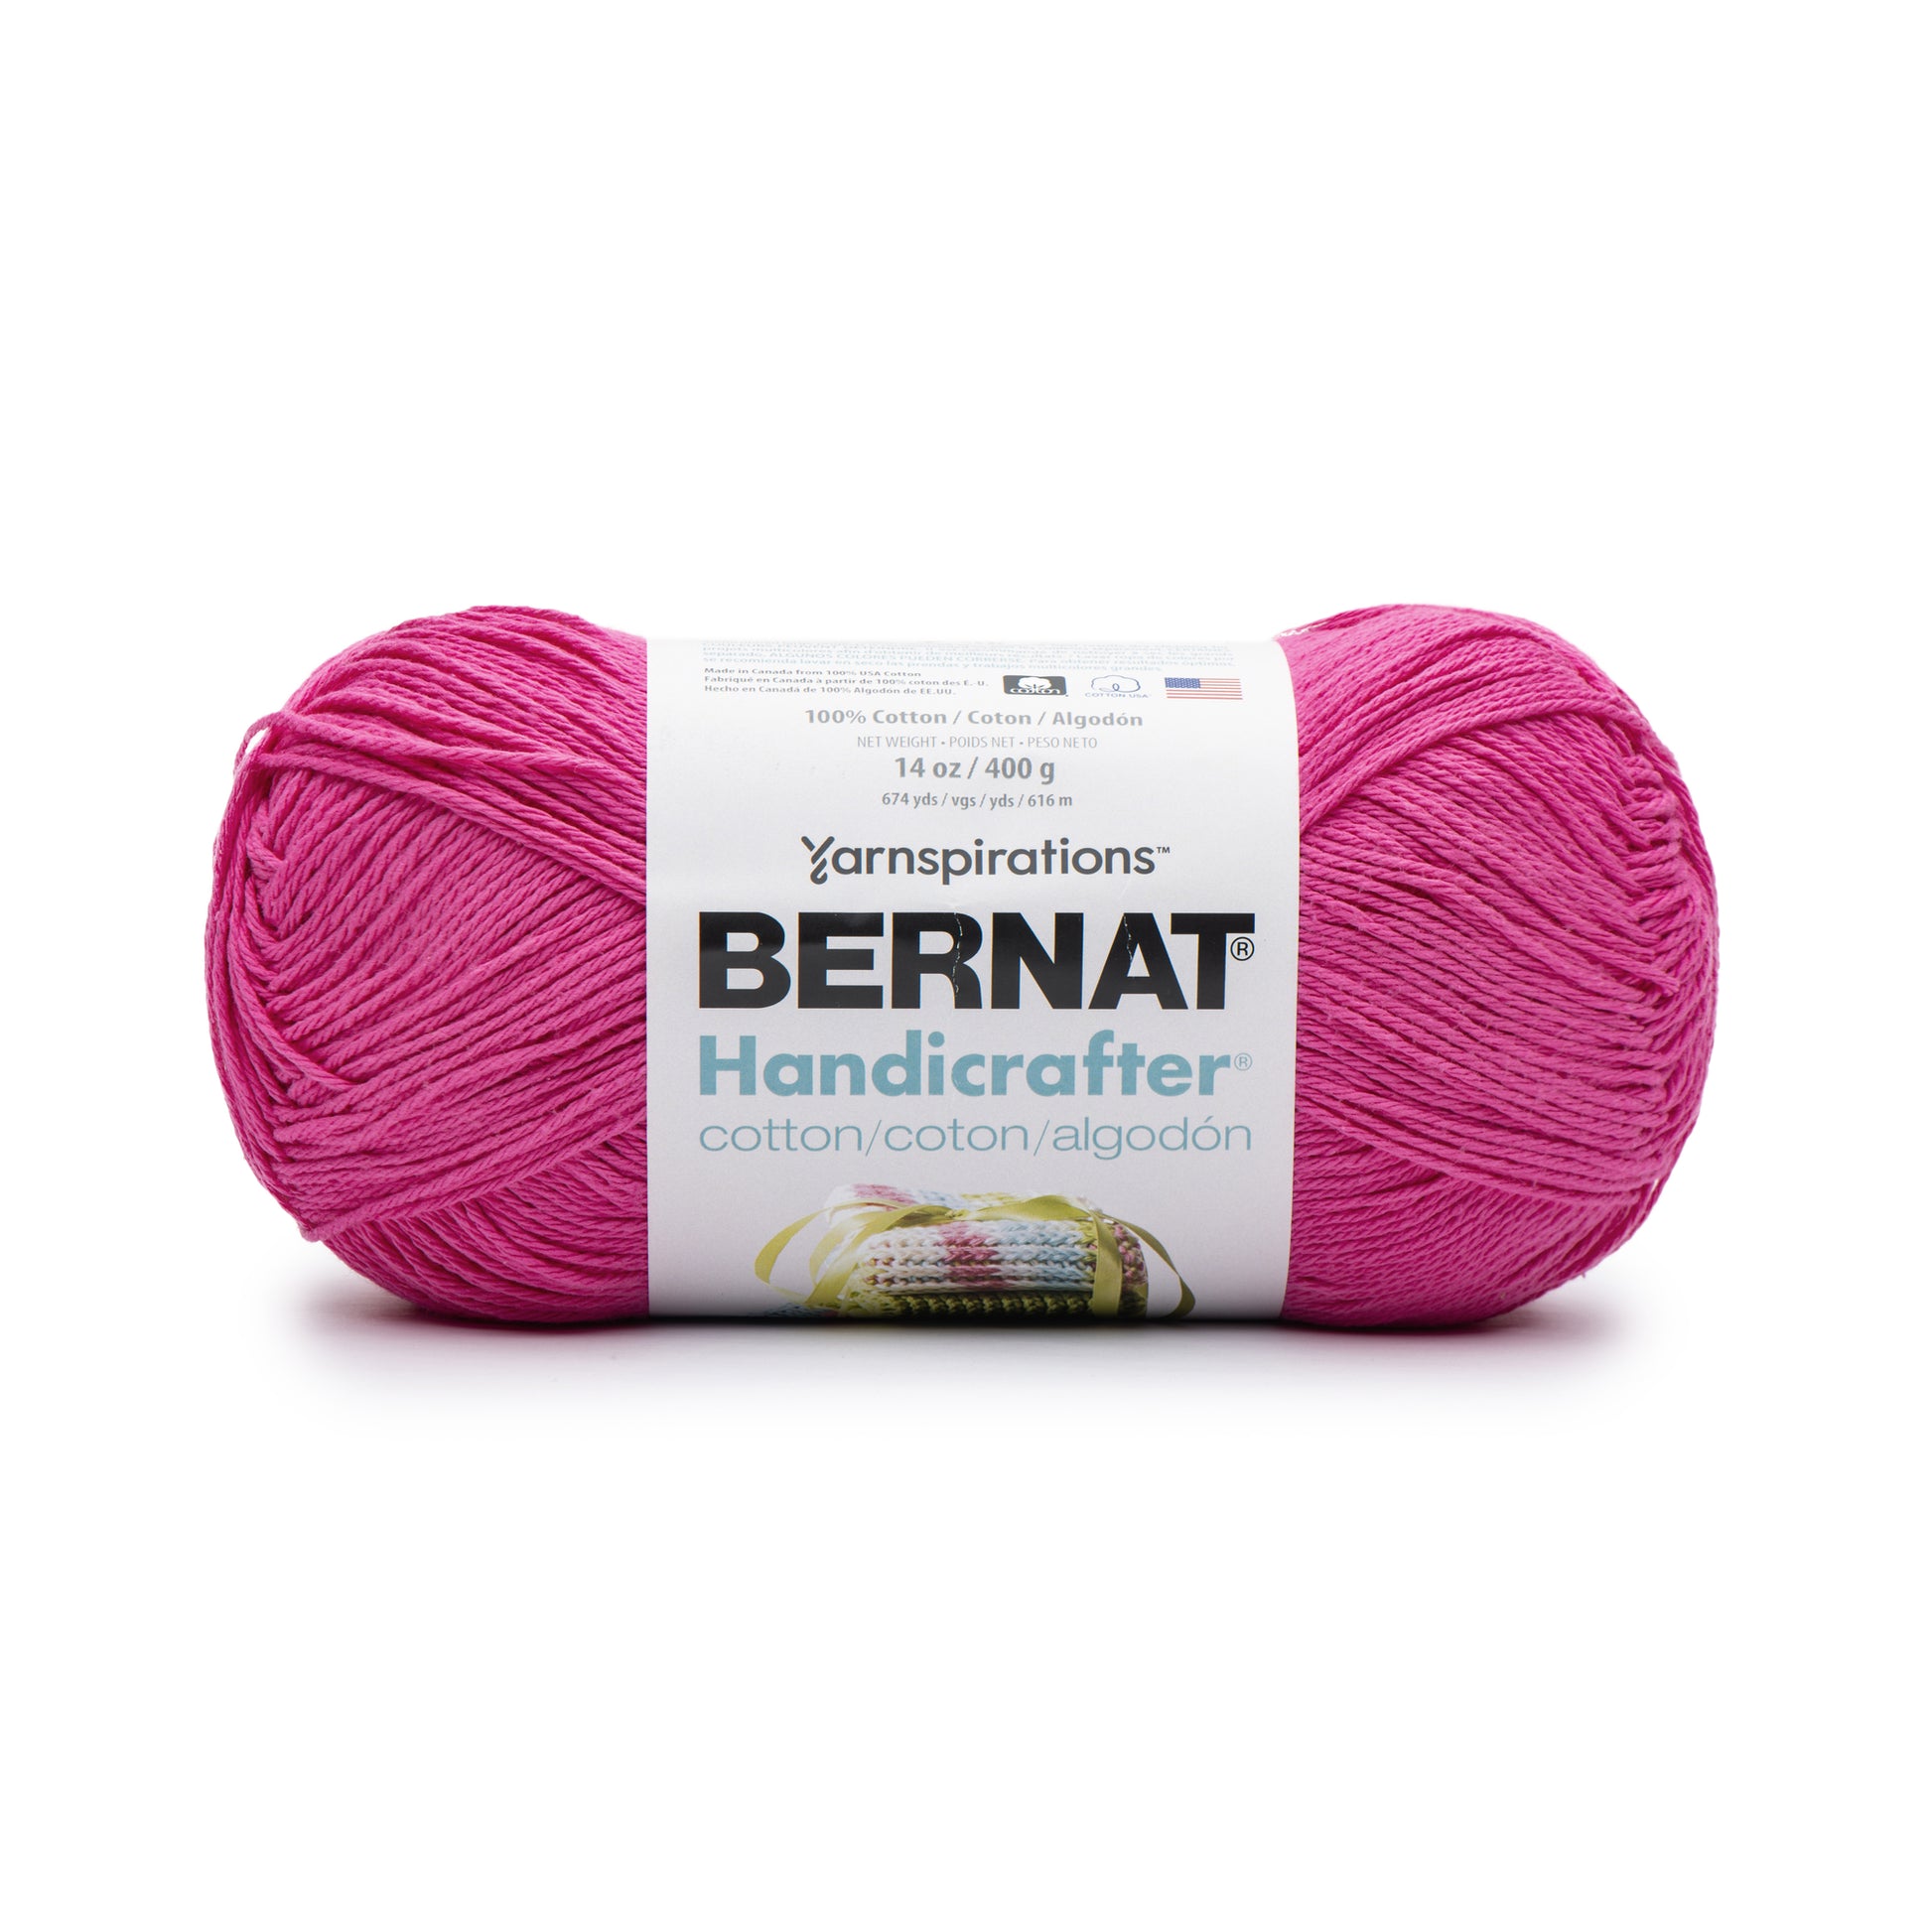 Bernat Handicrafter Cotton Yarn (400g/14oz) Hot Pink